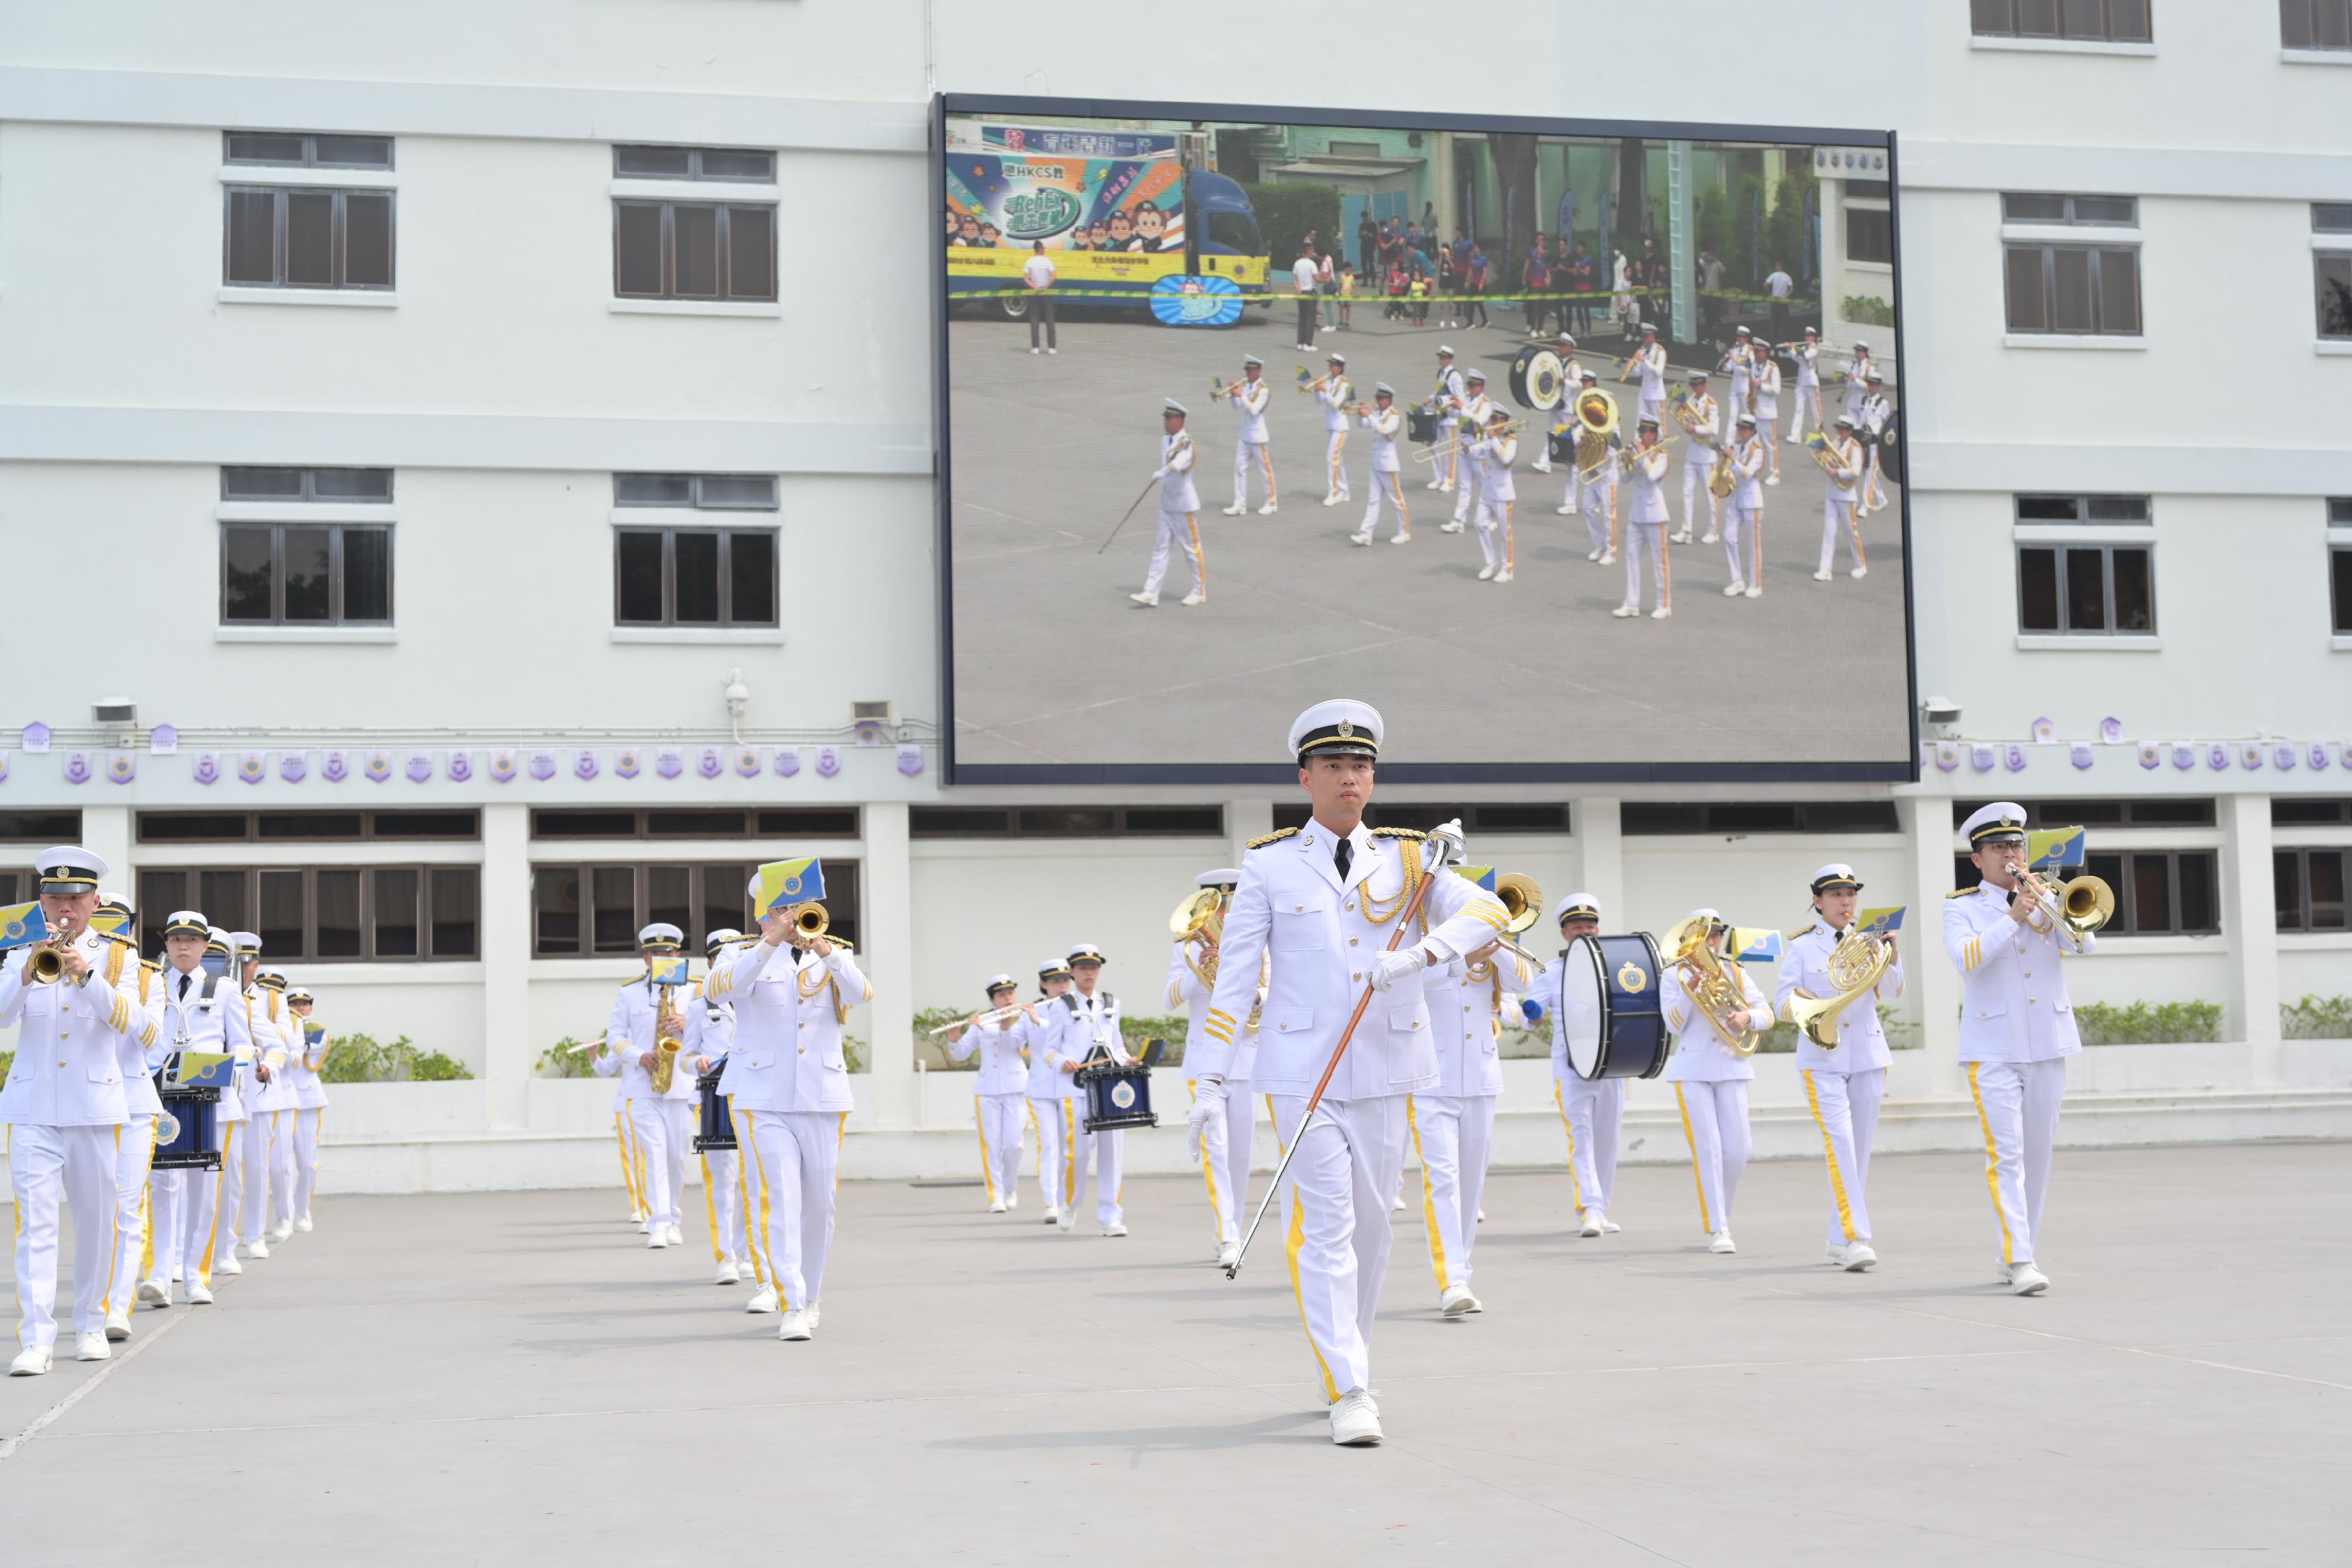 今日（四月十五日）是「全民国家安全教育日」，惩教署在香港惩教学院举行开放日，加深市民对国家安全及惩教署工作的认识，包括维护国家安全领域的工作和成效。图示步操乐队表演。